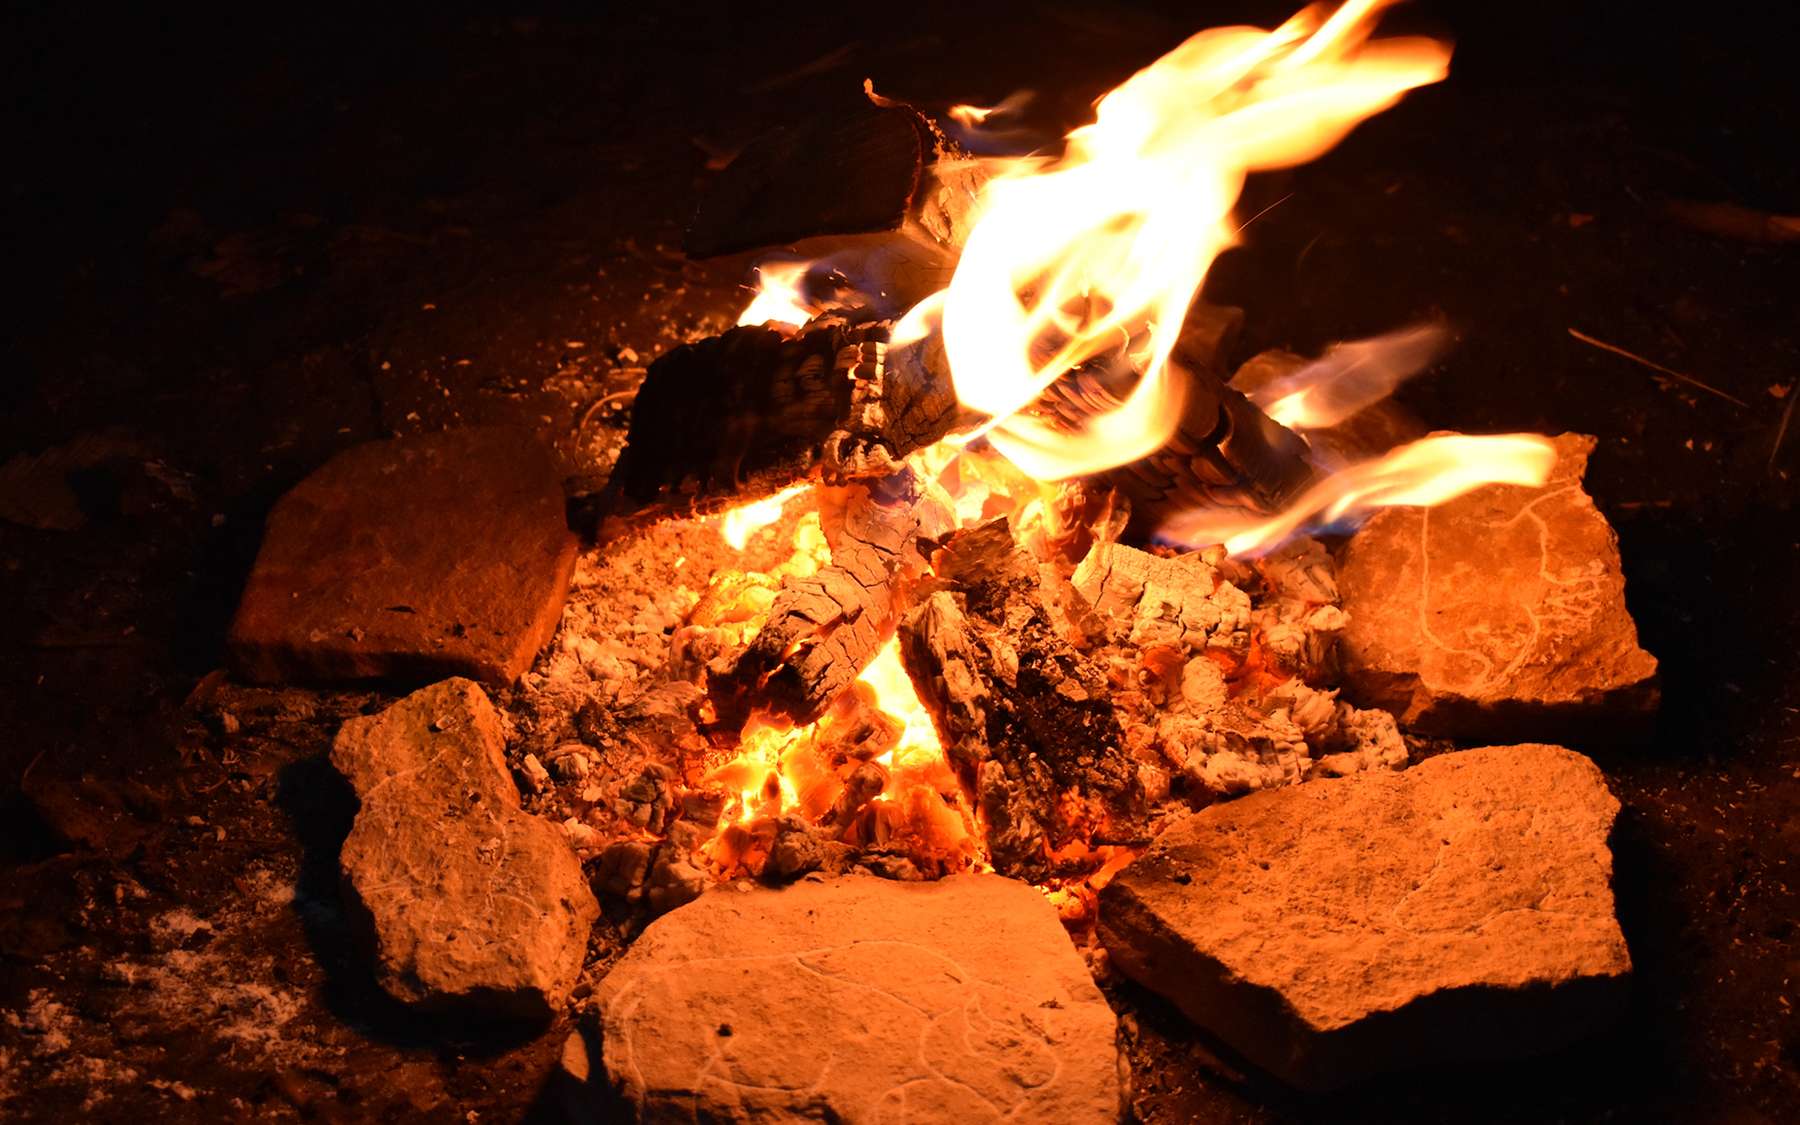 Les flammes autour du foyer auraient permis aux Hommes du Paléolithique de mettre en valeur les gravures et le relief naturel des plaquettes. © Victor, Adobe Stock